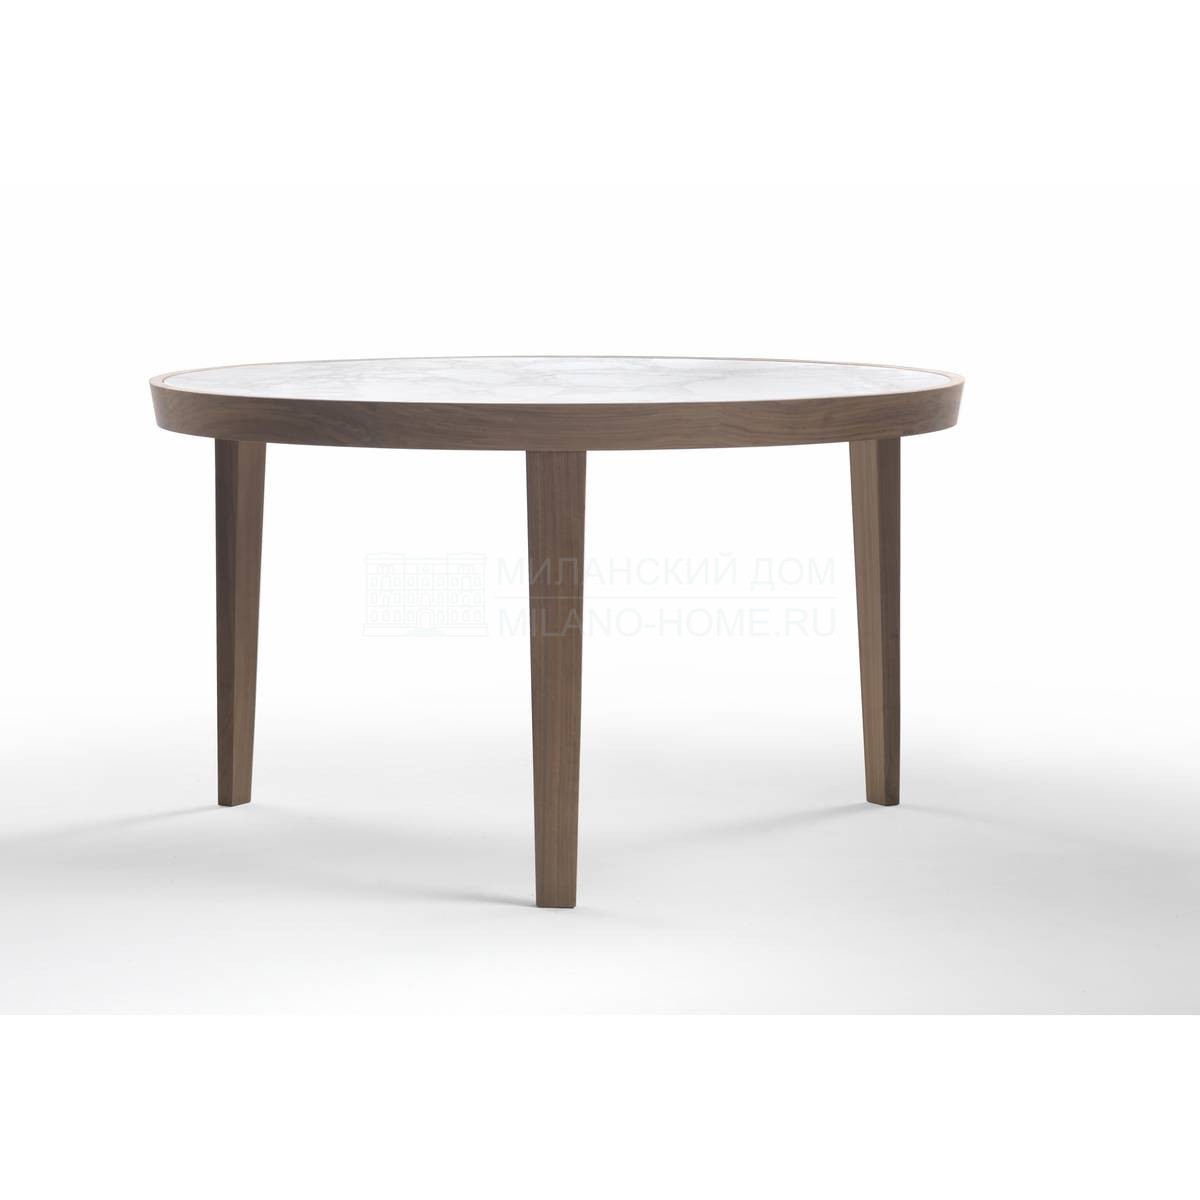 Кофейный столик Dida/ table из Италии фабрики FLEXFORM